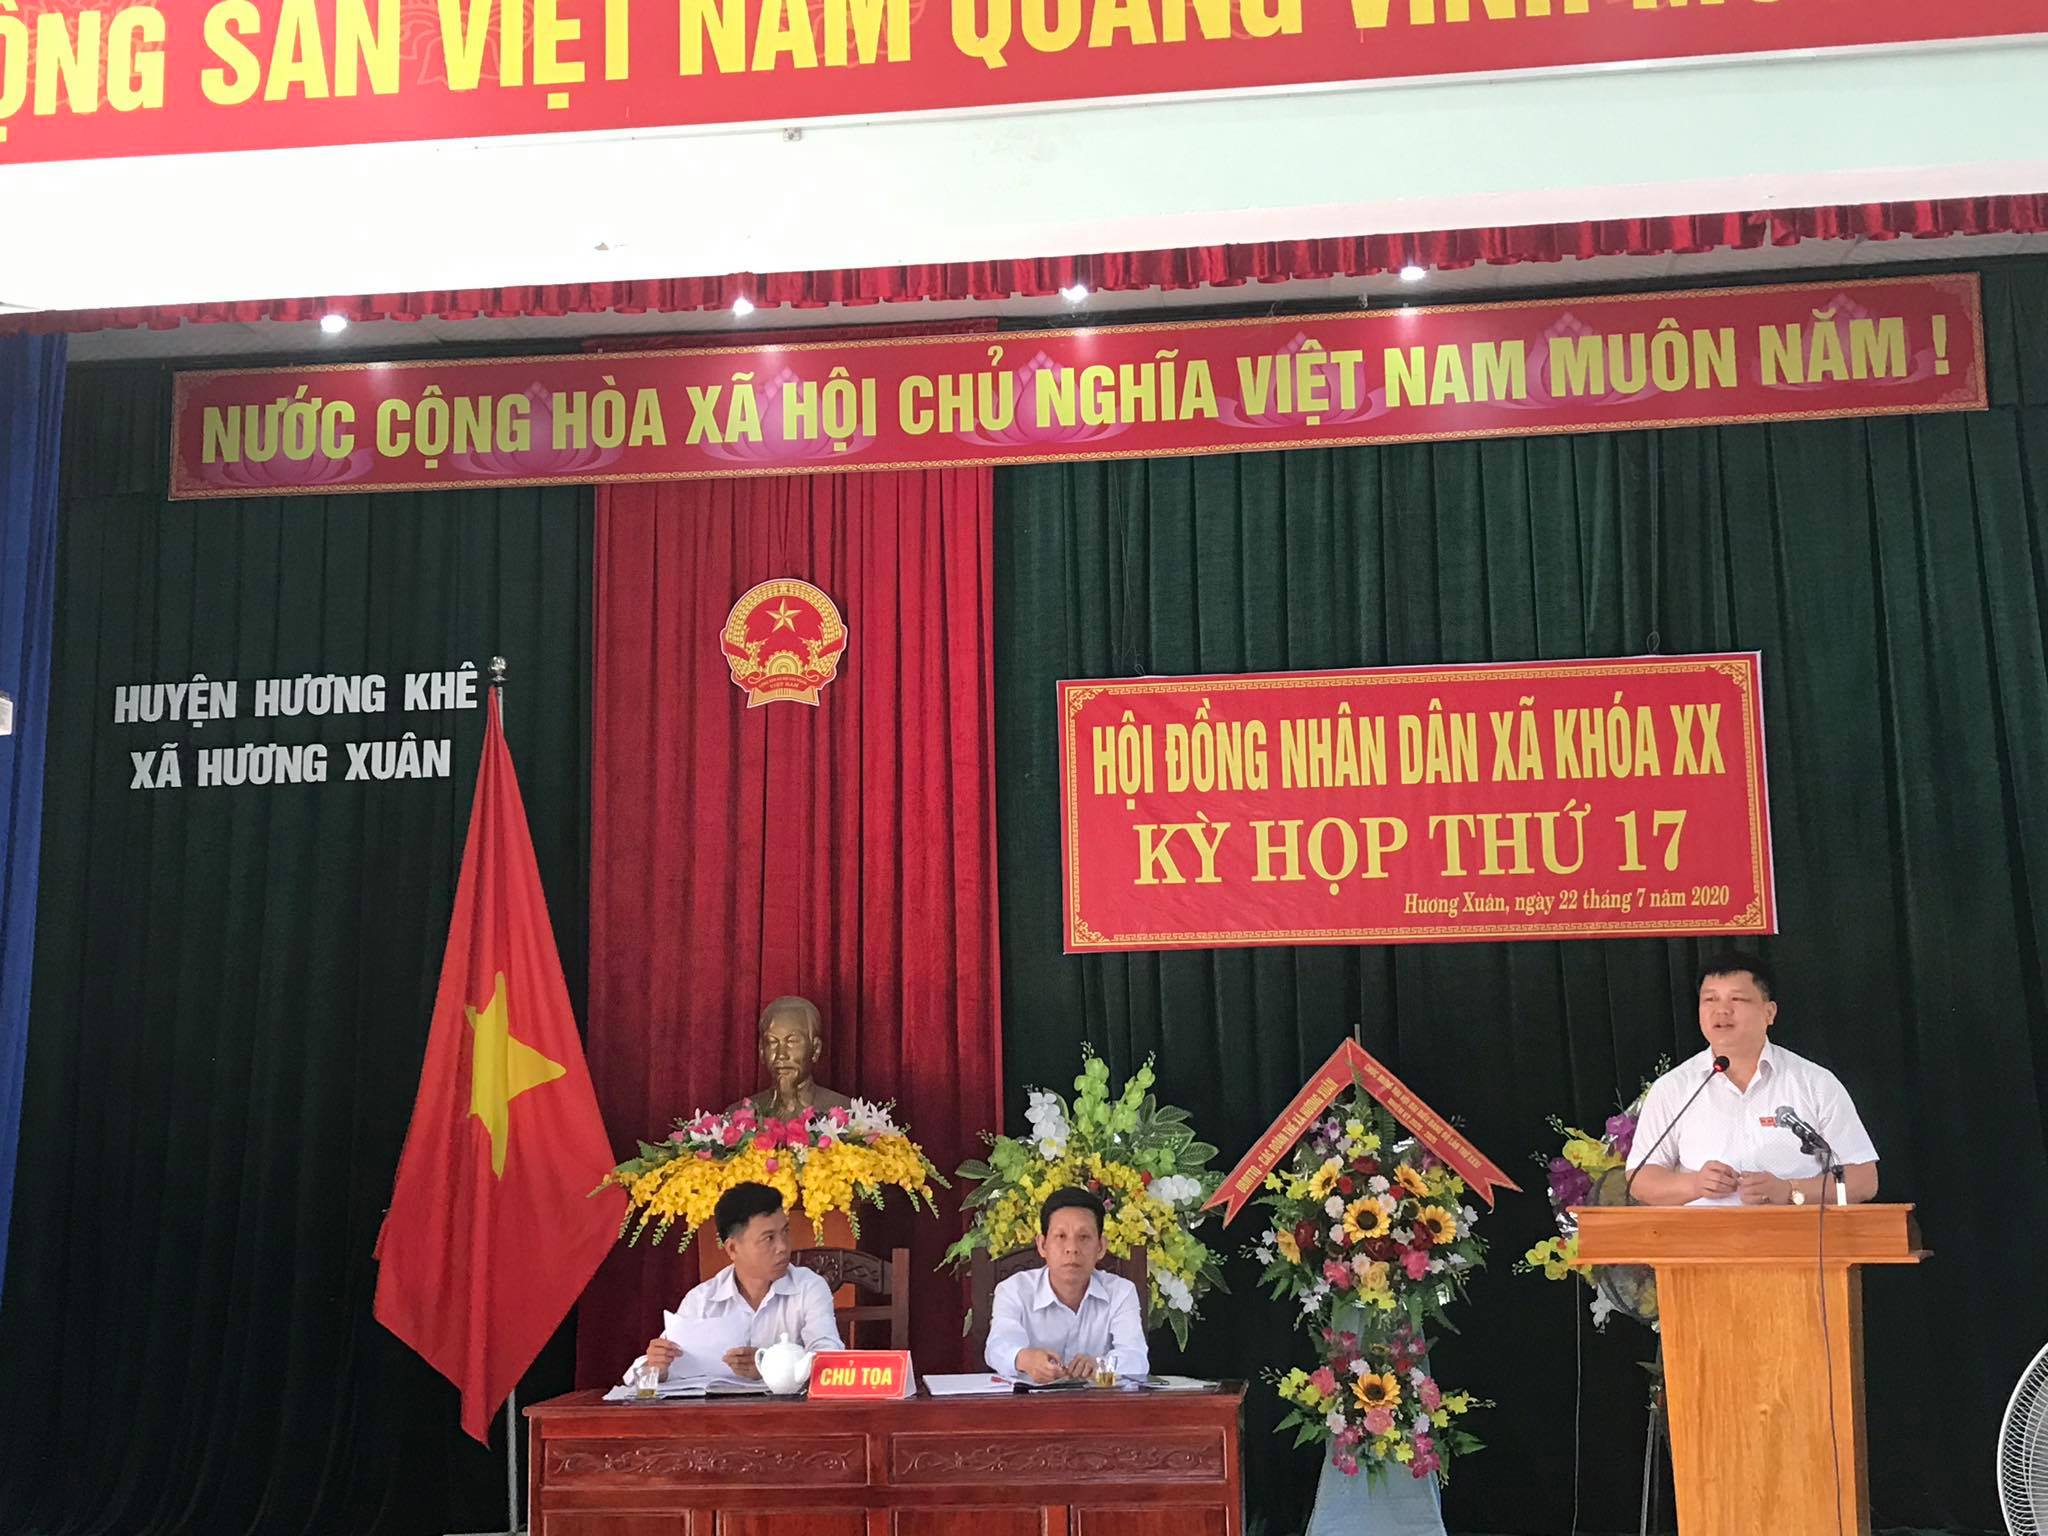 Xã Hương Xuân tổ chức Kỳ họp thứ 17, Hội đồng nhân dân xã khoá XX